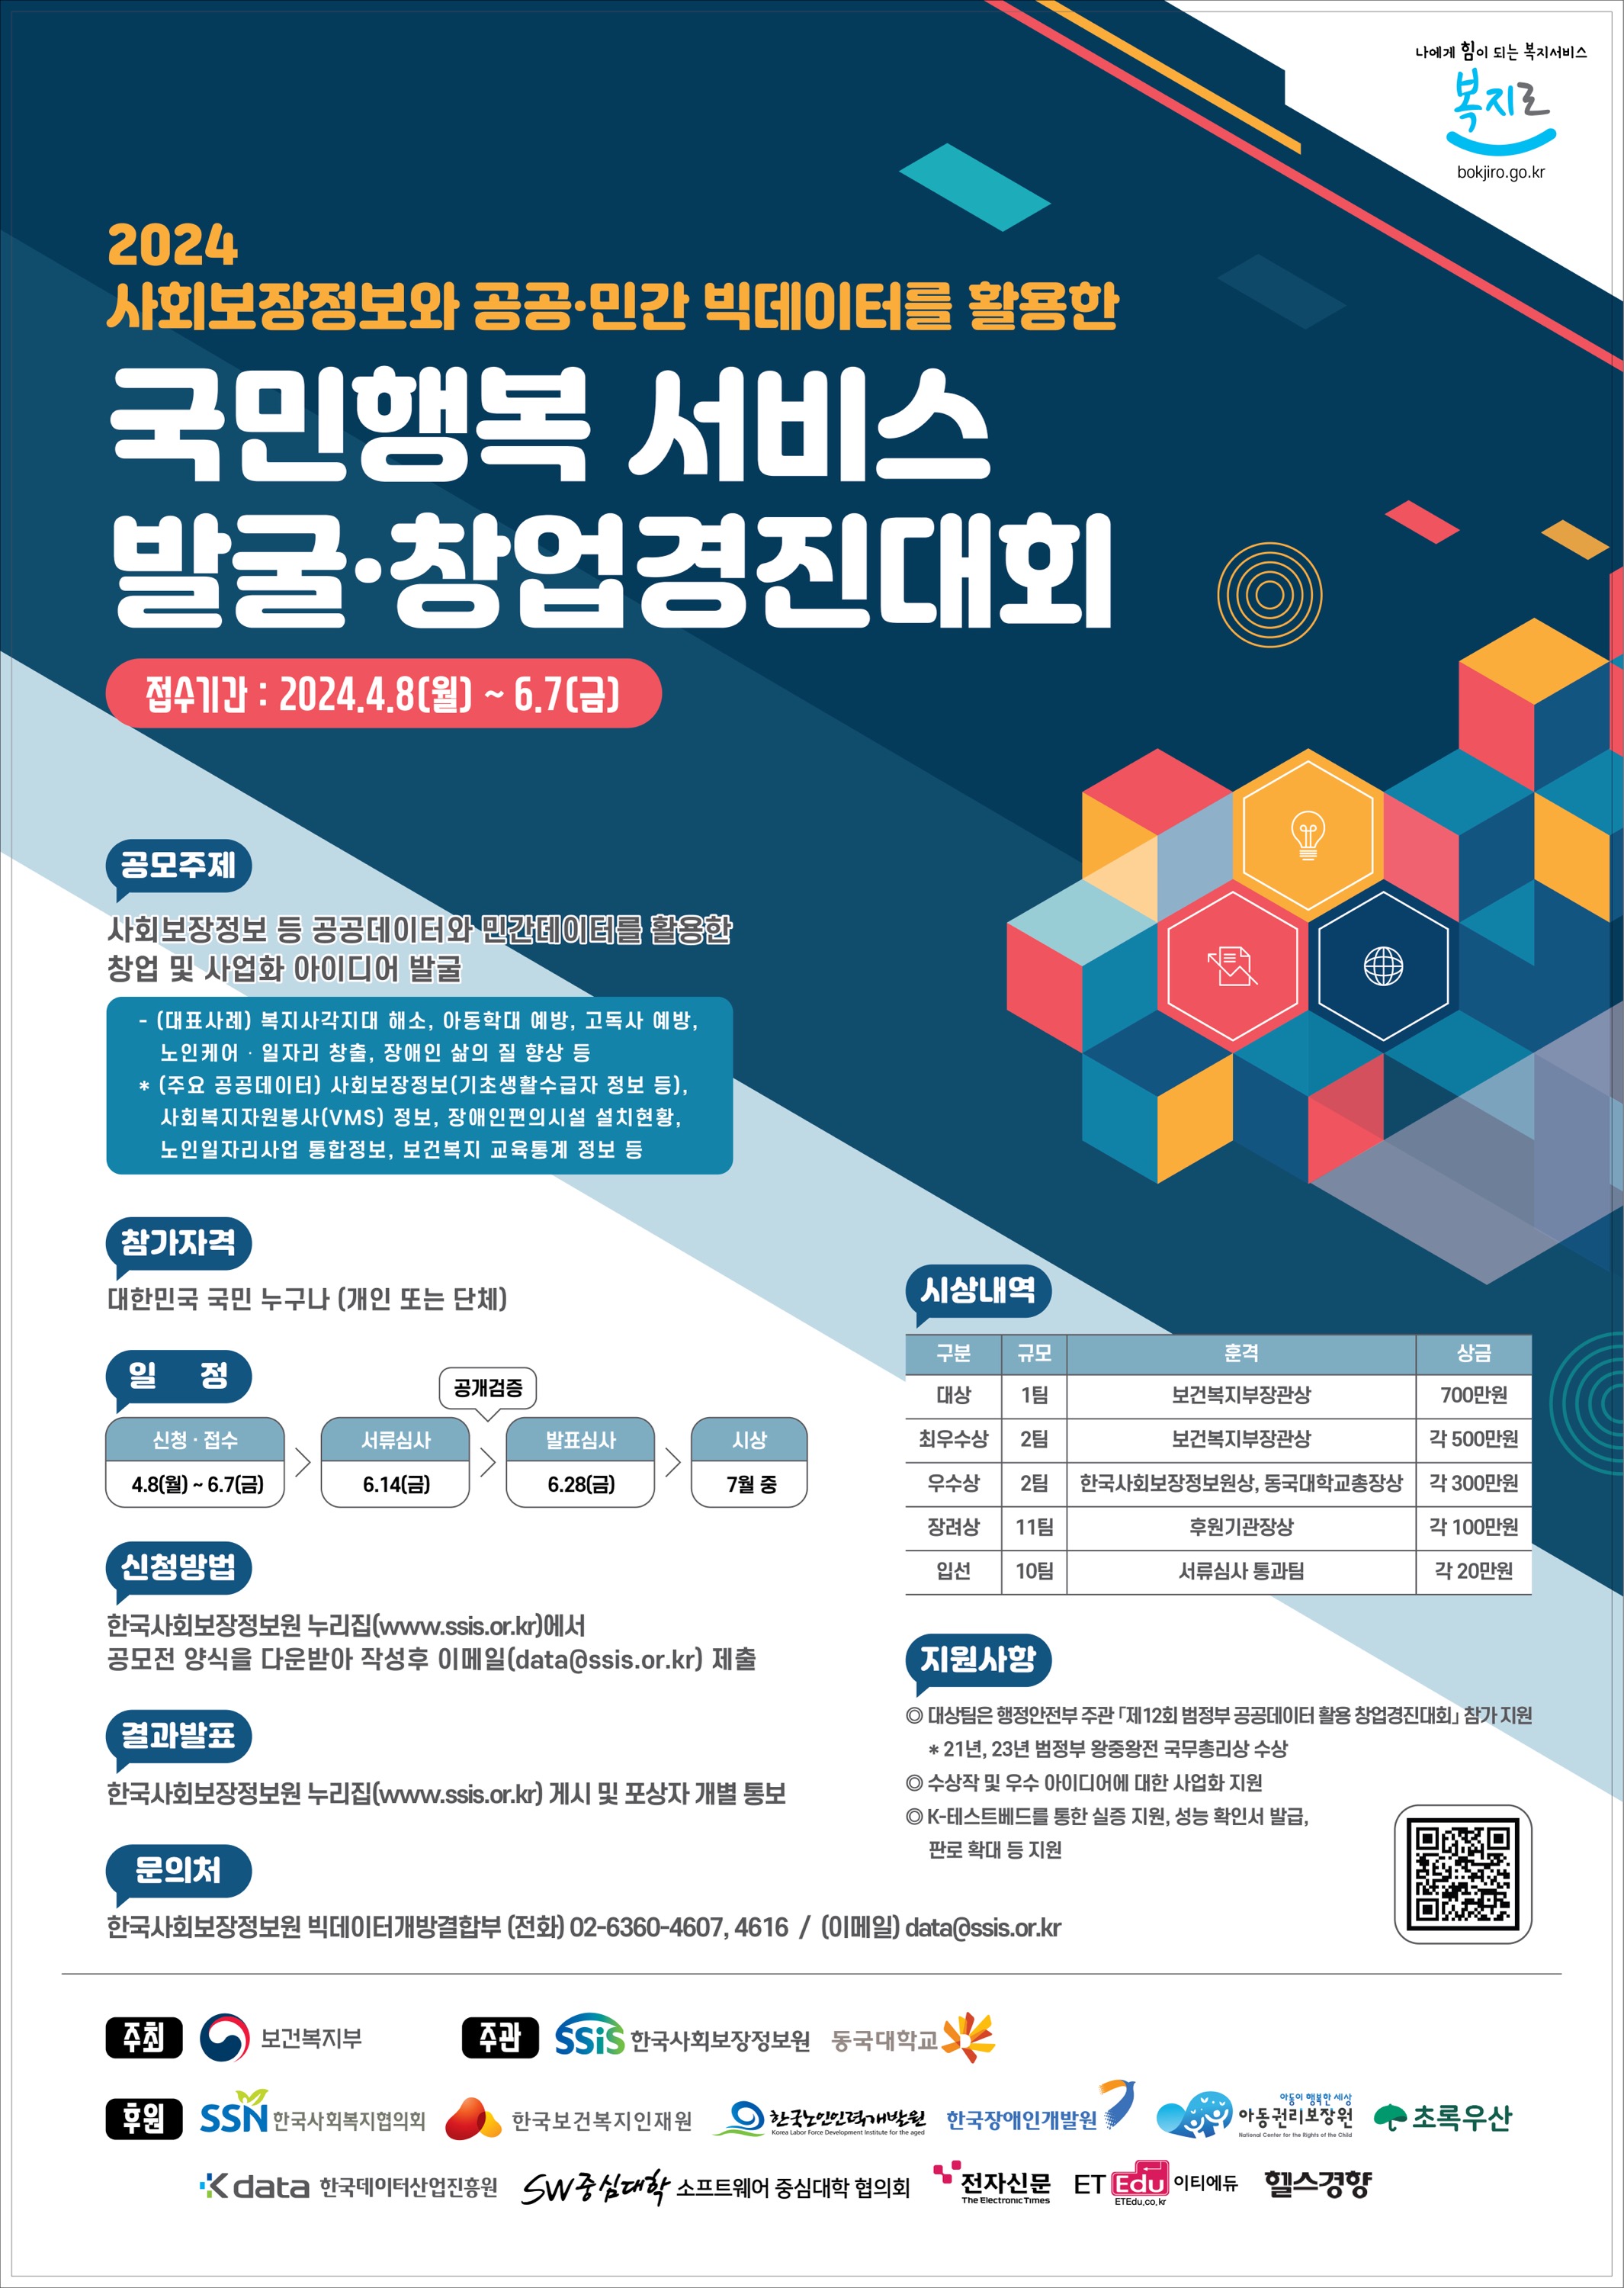 한국사회보장정보원 「2024 국민행복 서비스발굴·창업 경진대회」